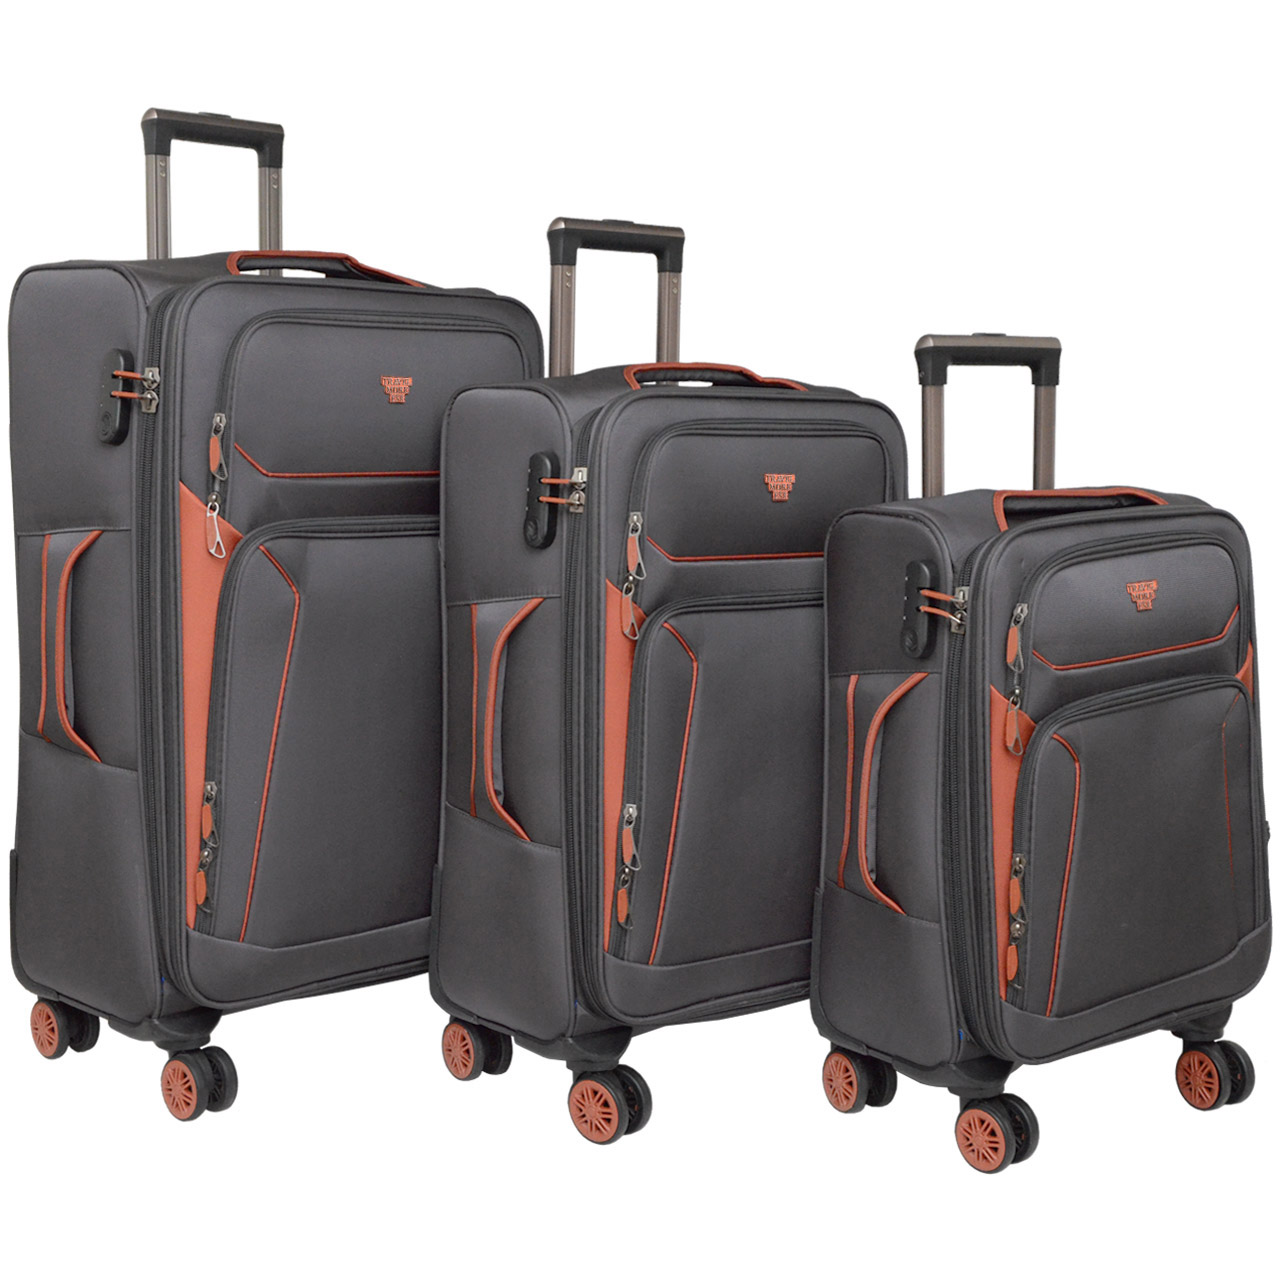 مجموعه سه عددی چمدان مدل TRAVEL001